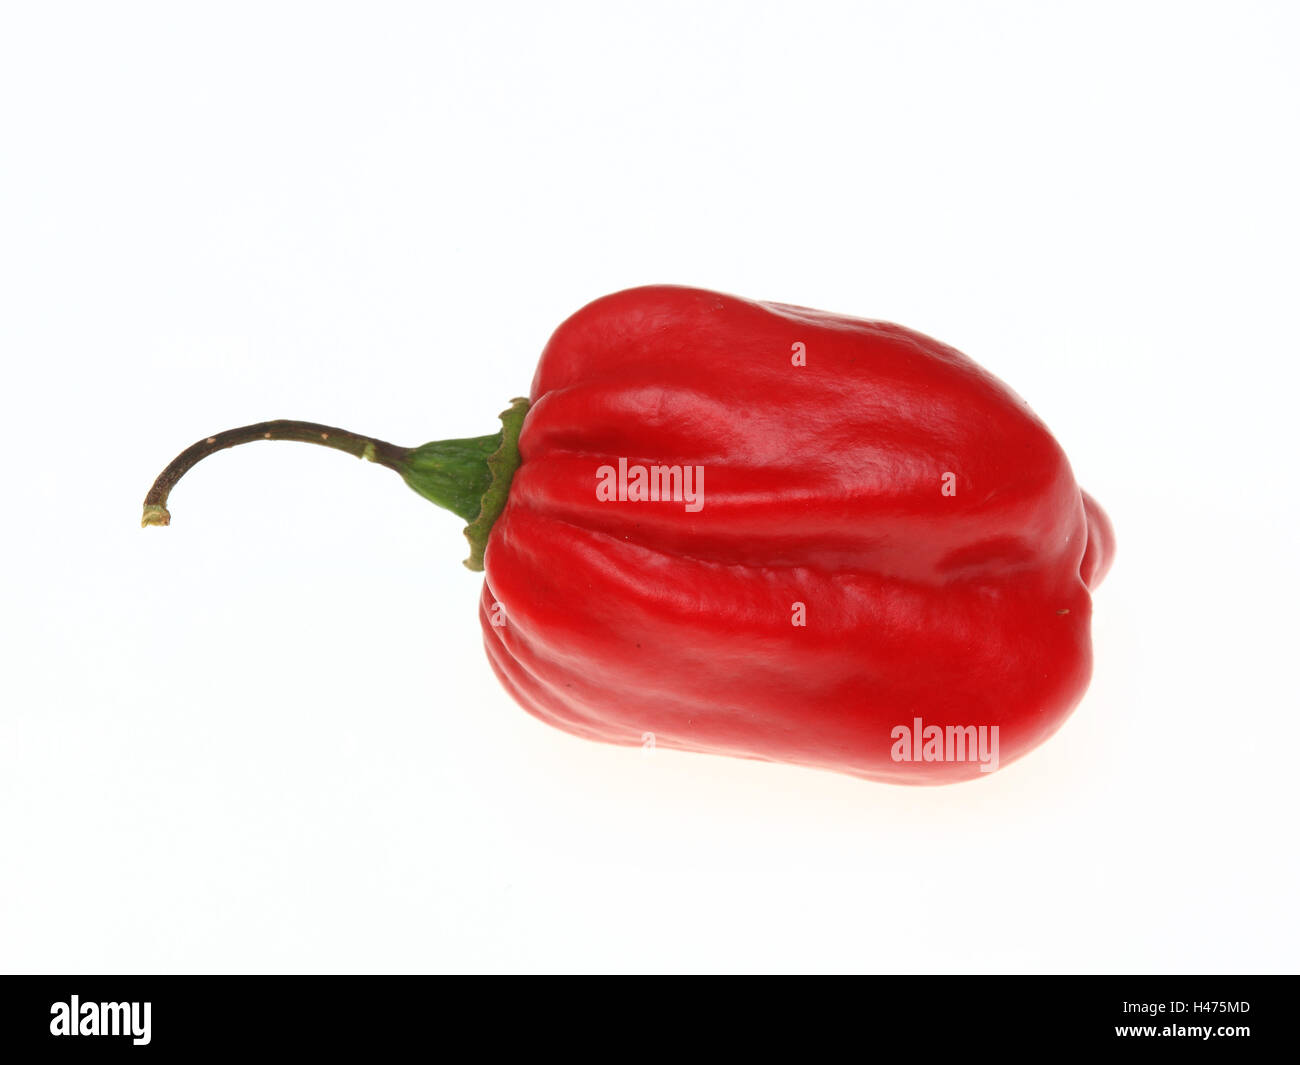 red Habanero, chili pepper, Capsicum annuum Stock Photo